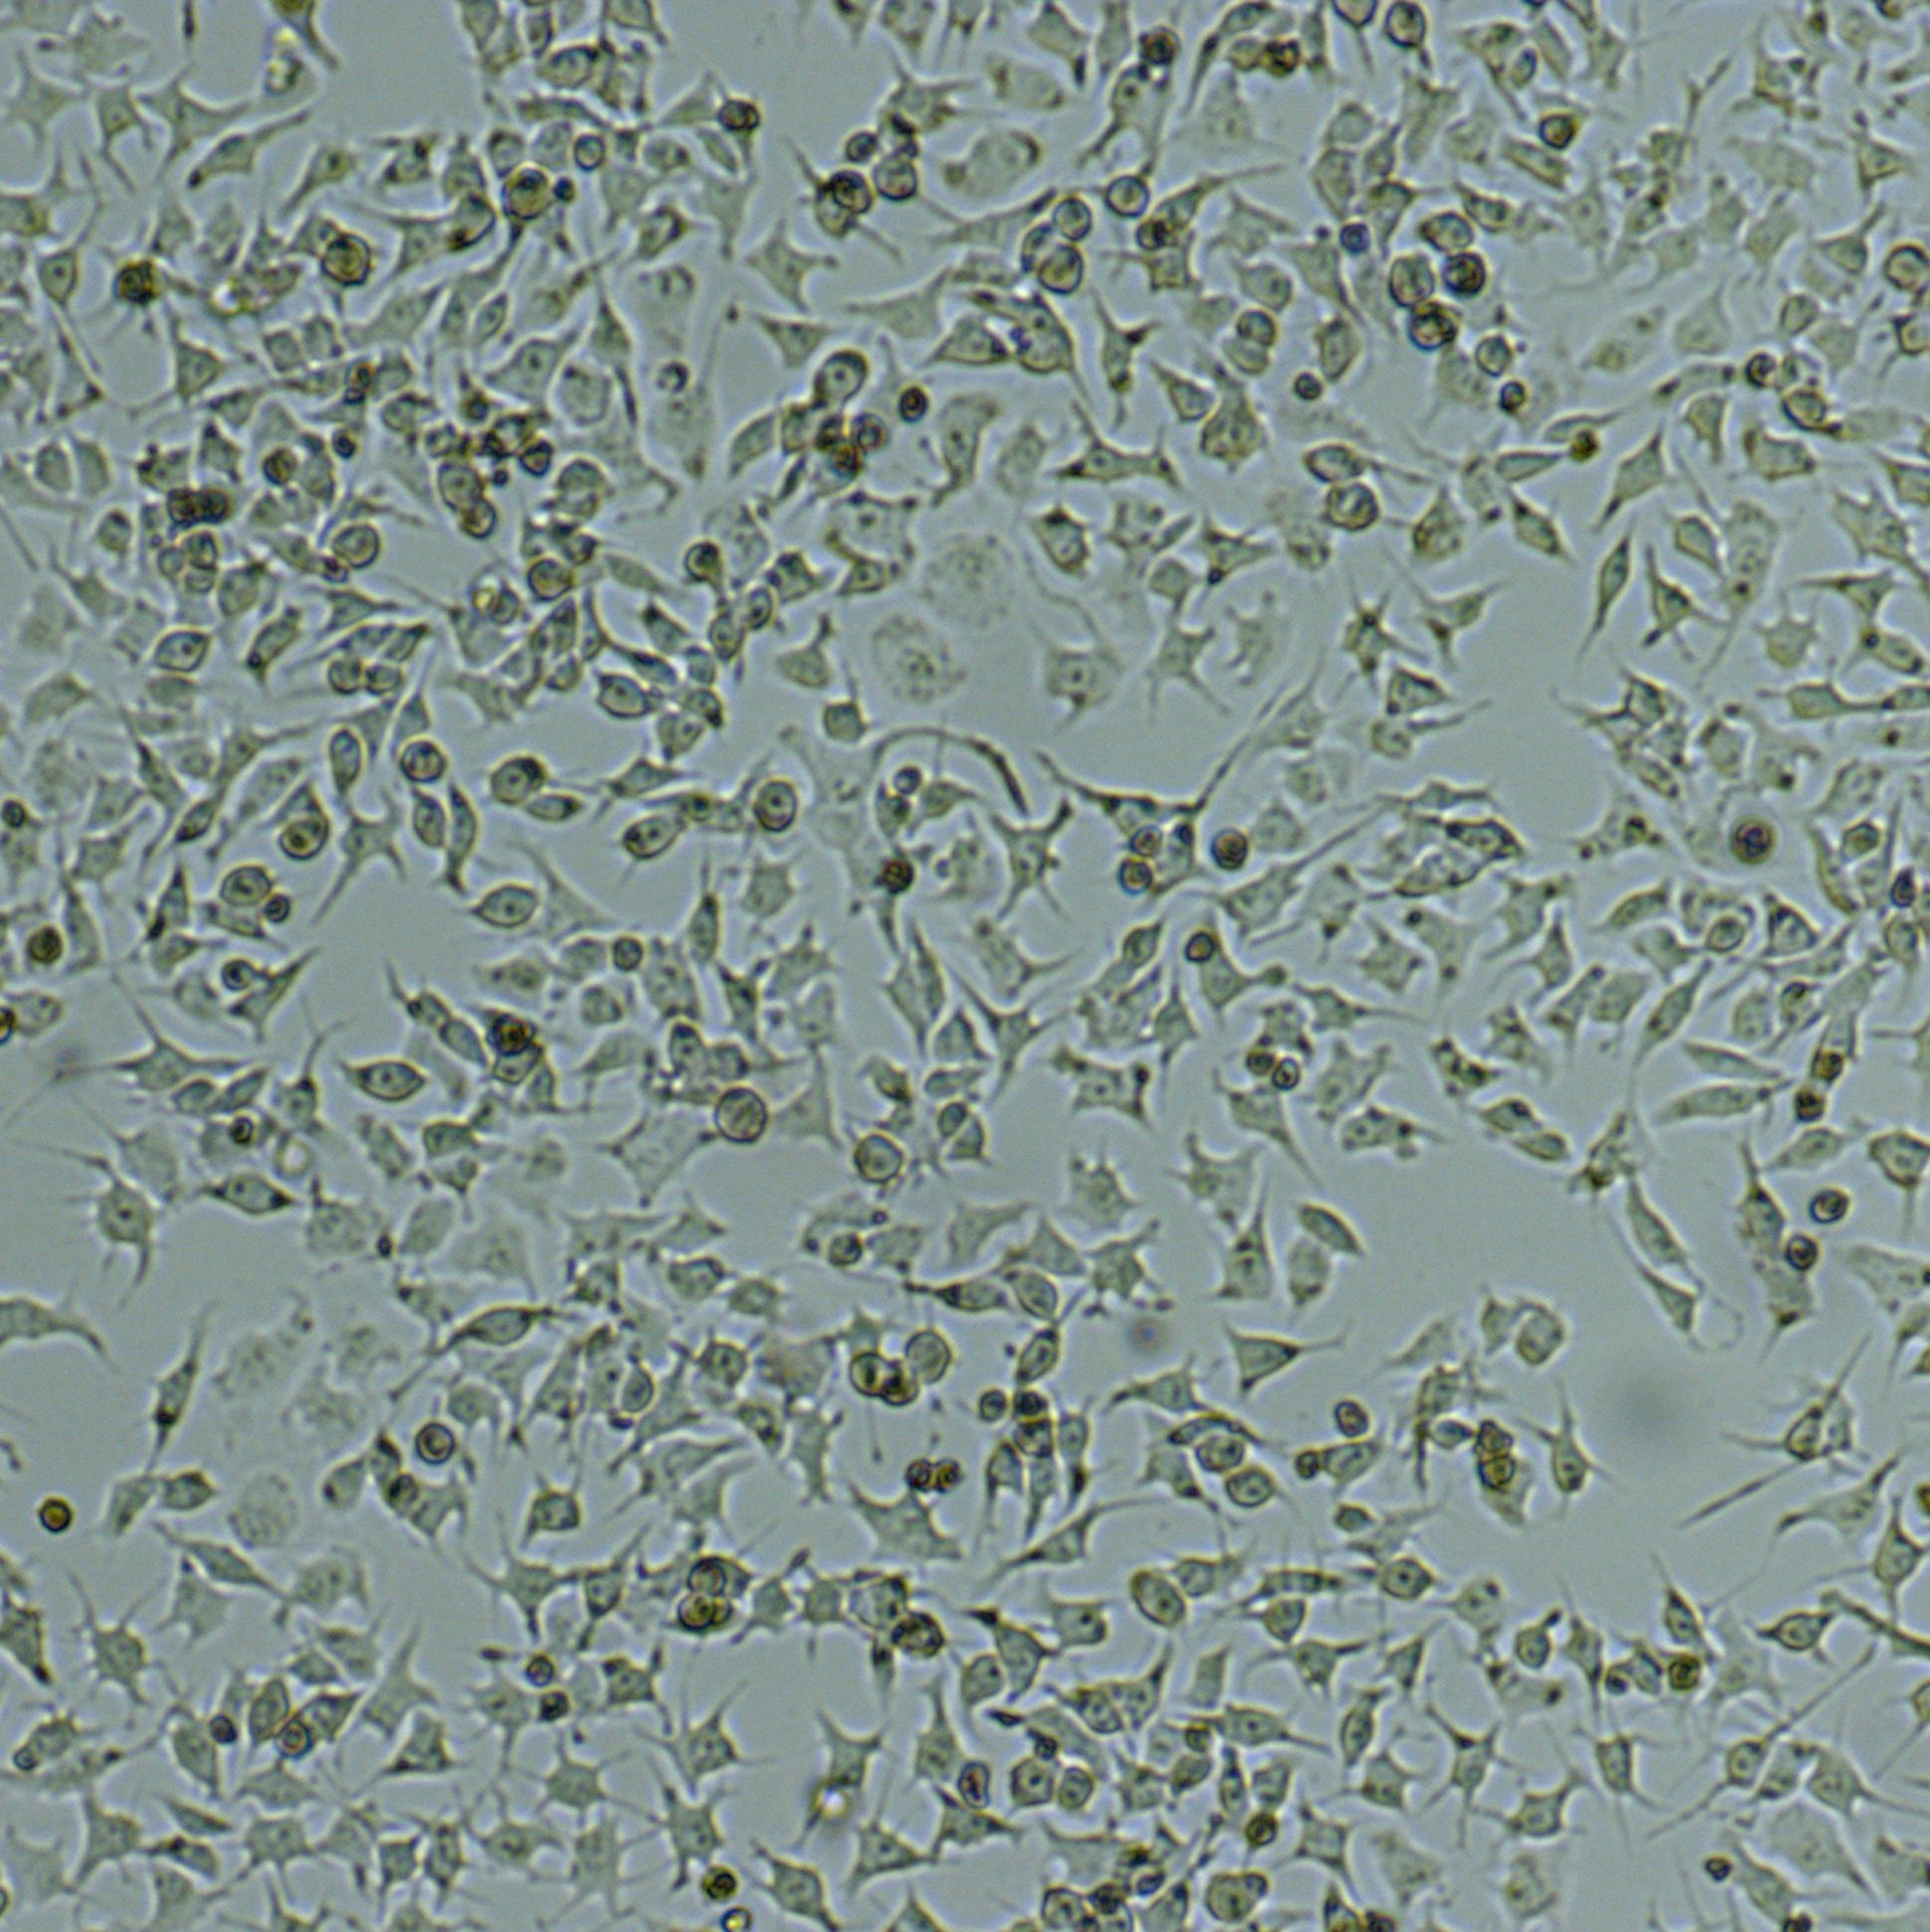 92-1[92-1]人葡萄膜黑色素瘤细胞